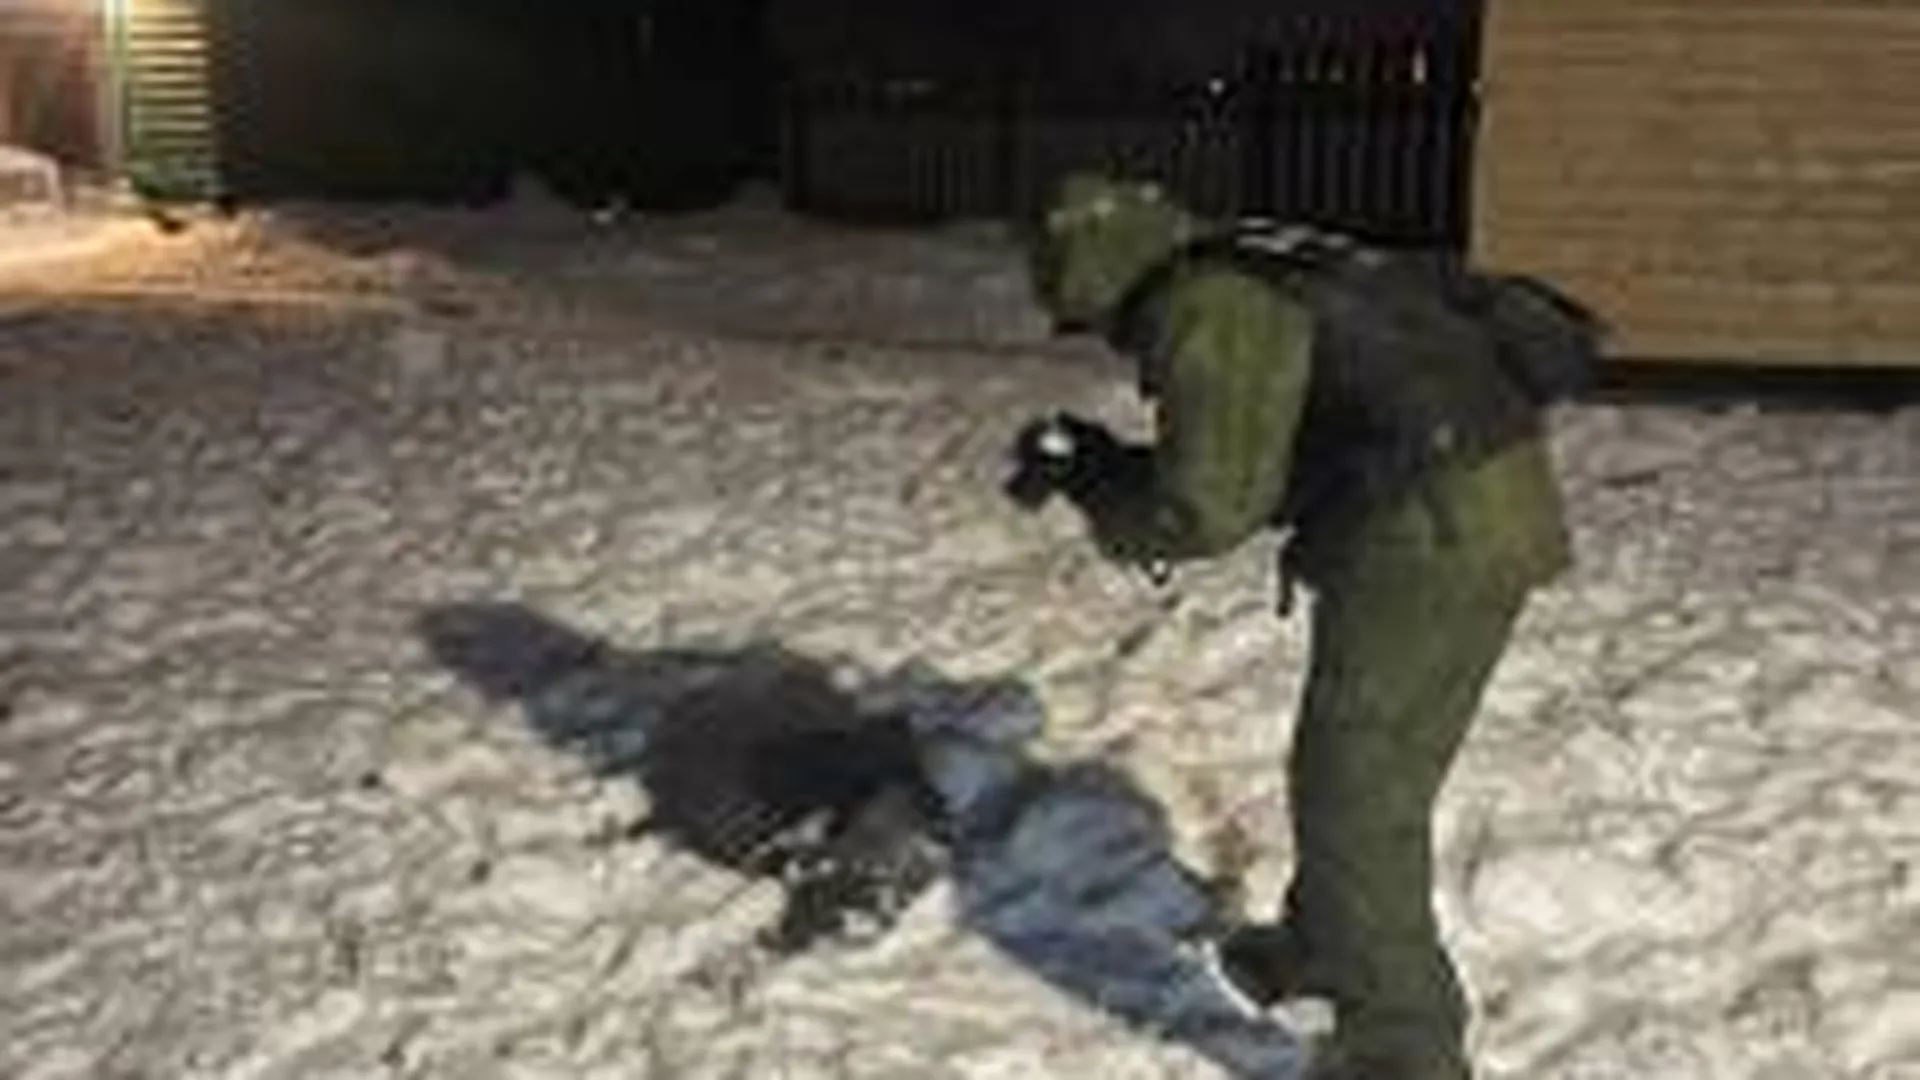 Шестилетний мальчик погиб в Тверской области после нападения собак